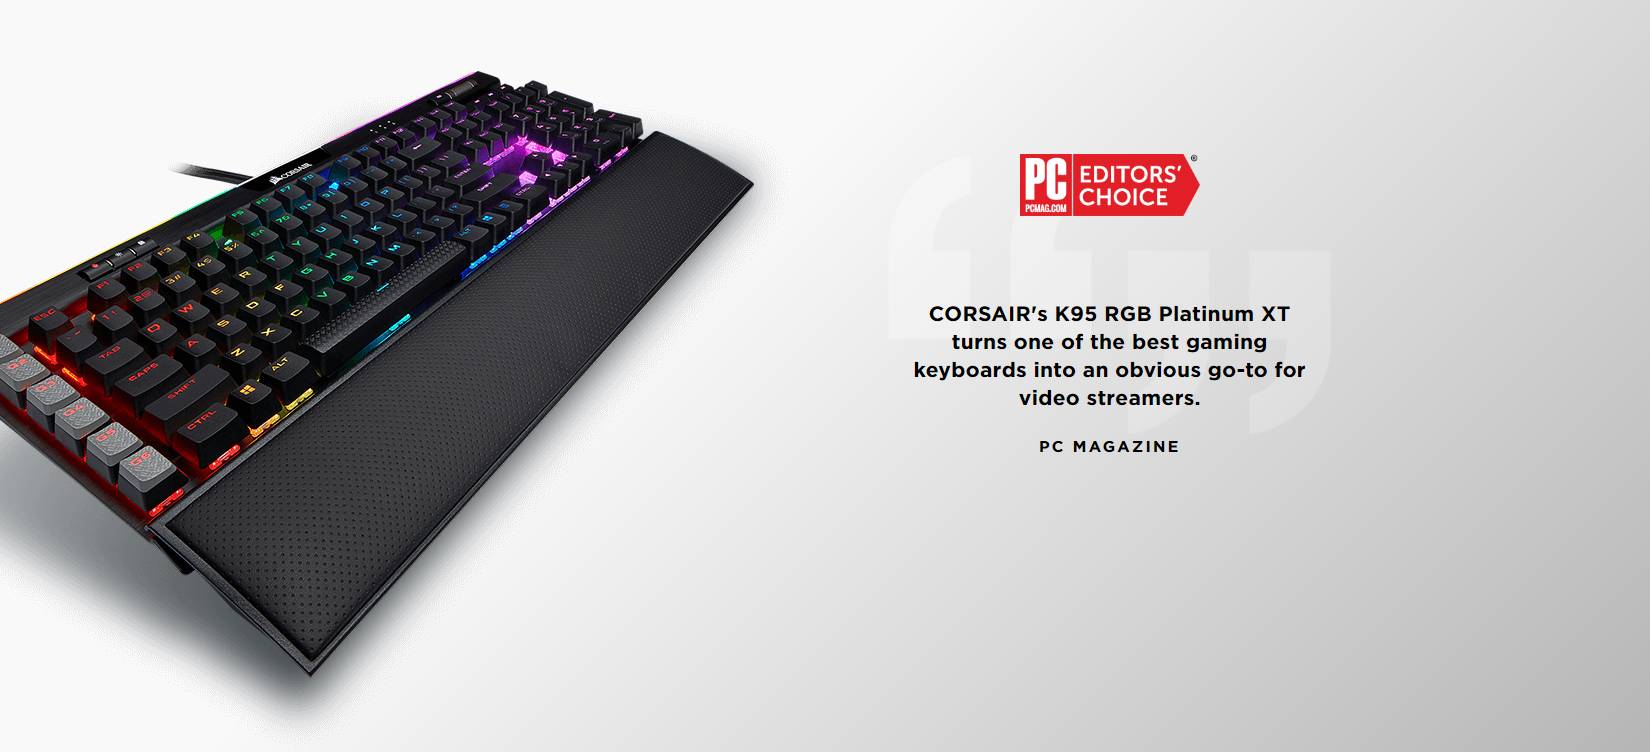 Danh hiệu bàn phím cơ gaming xuất sắc nhất do tạp chí PCMag bình chọn cho bàn phím Corsair K95 Platinum XT